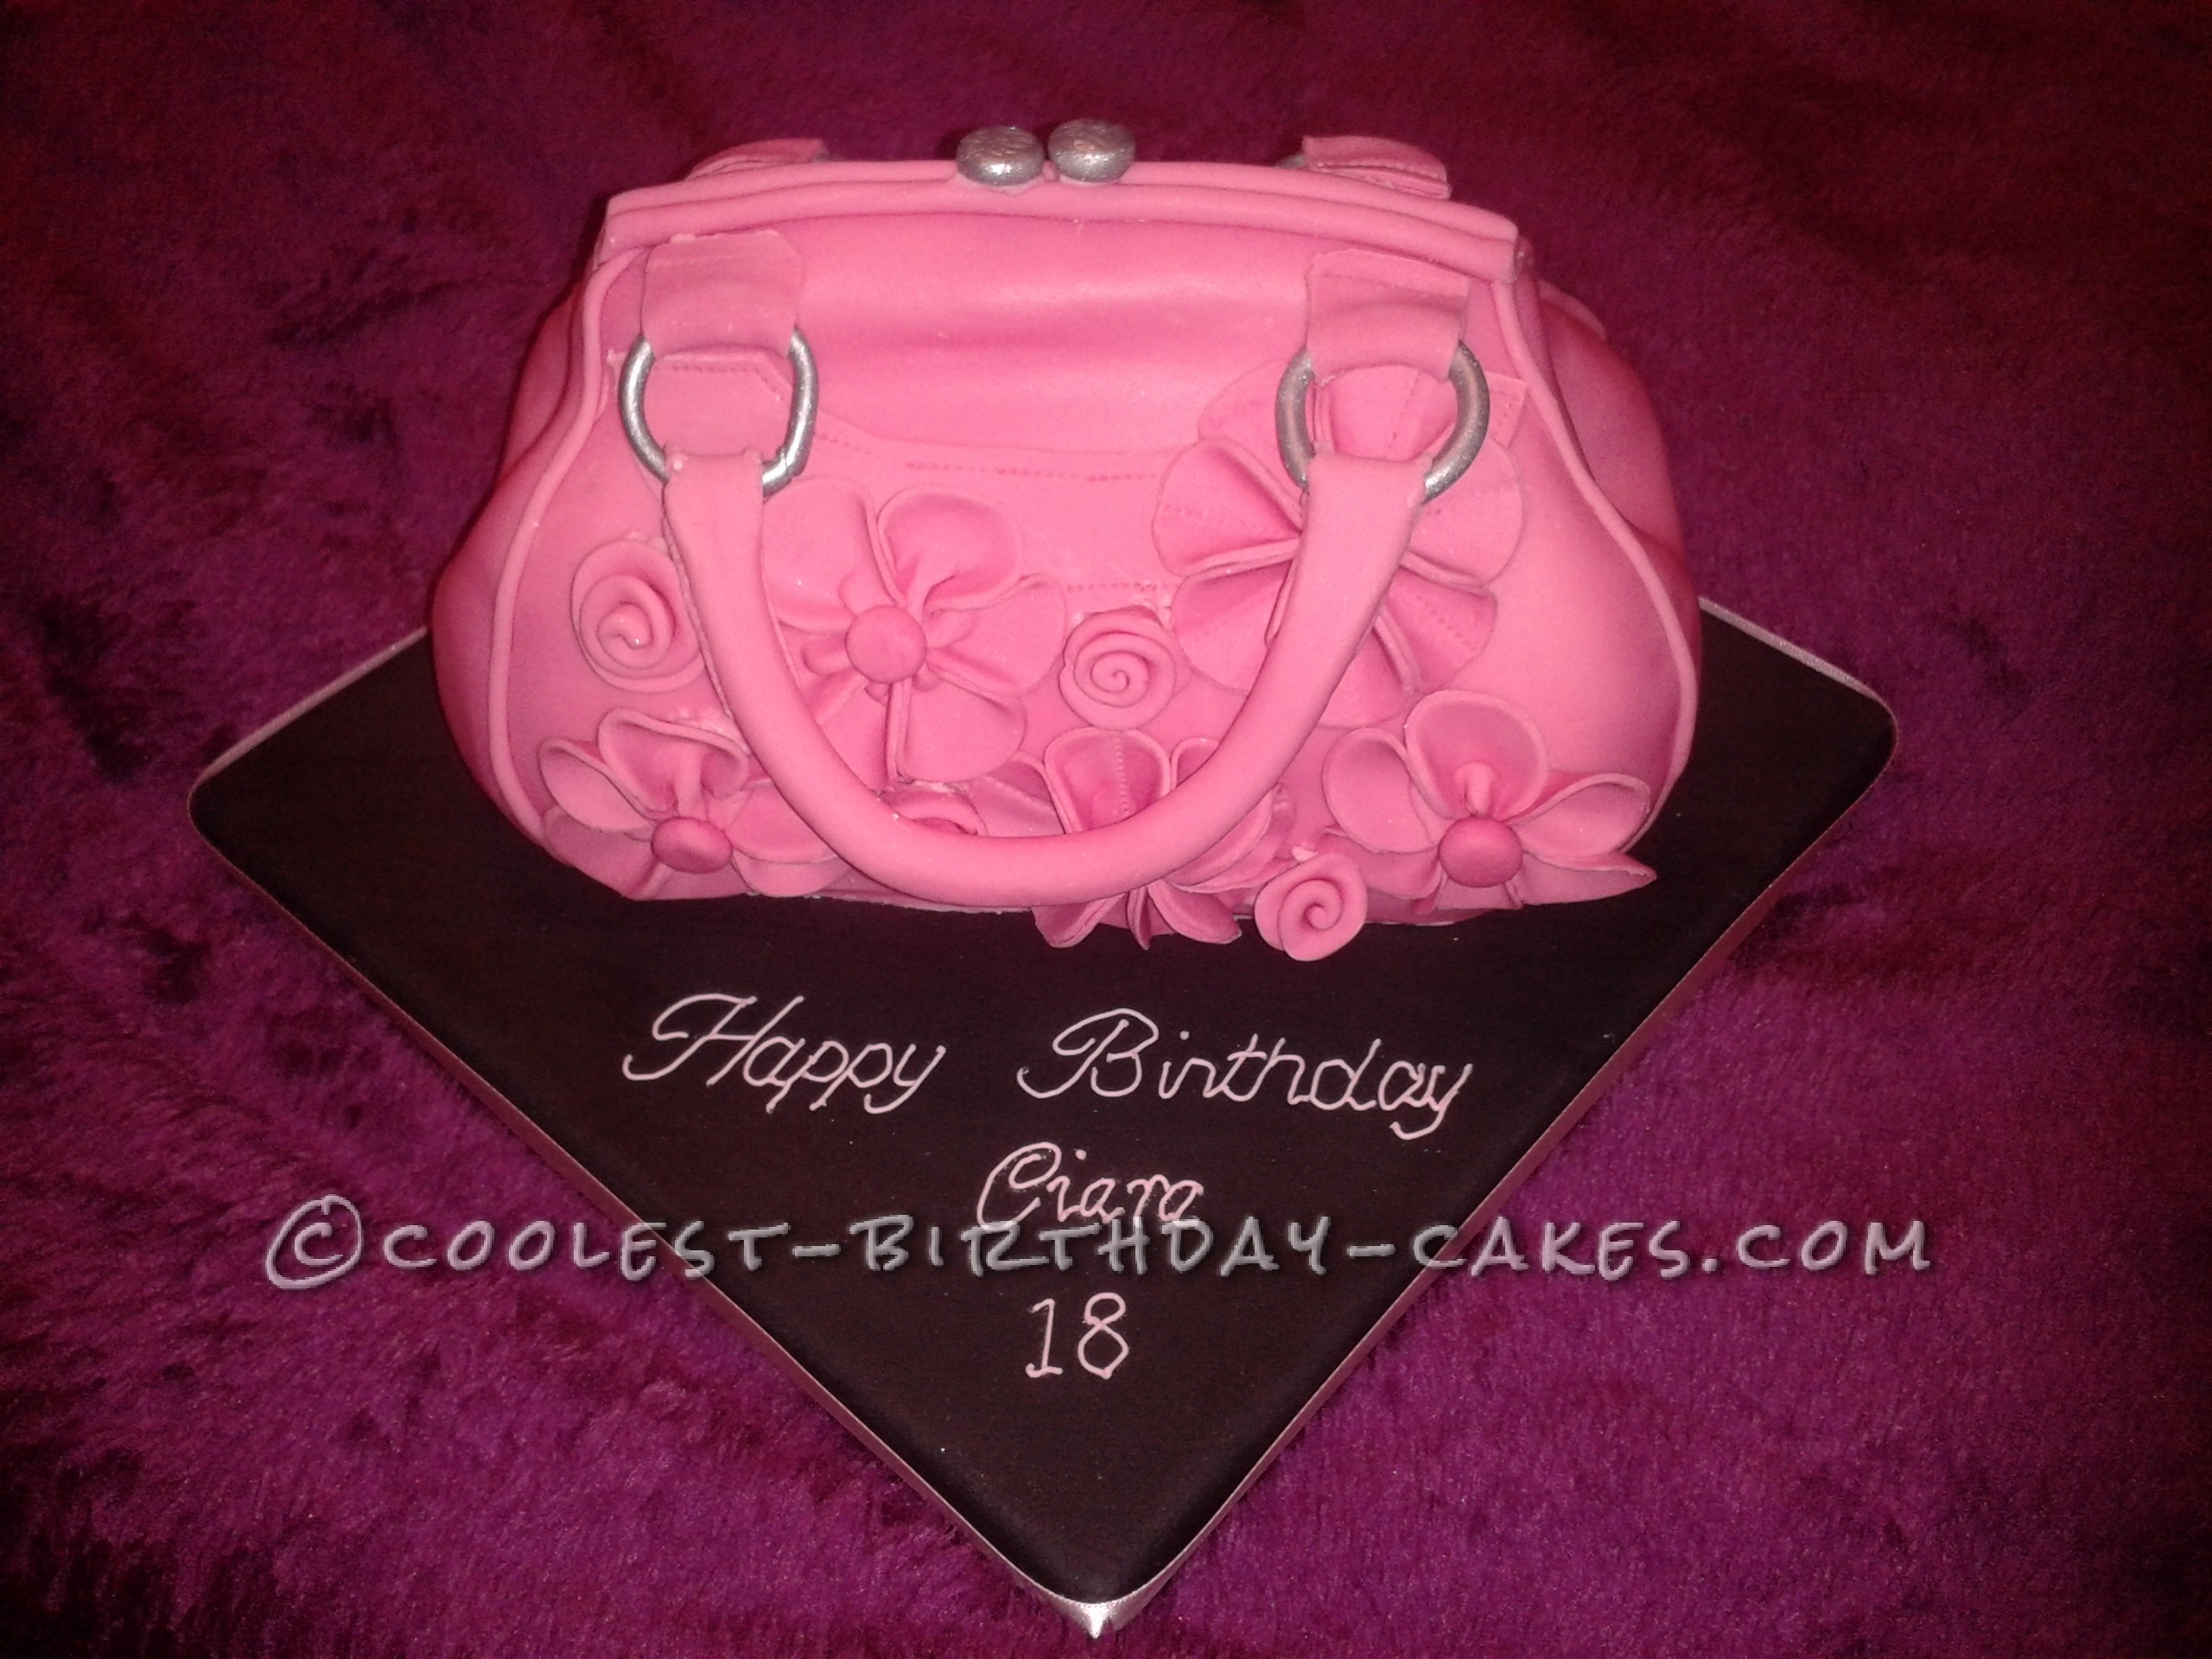 Coolest Pink Handbag Cake